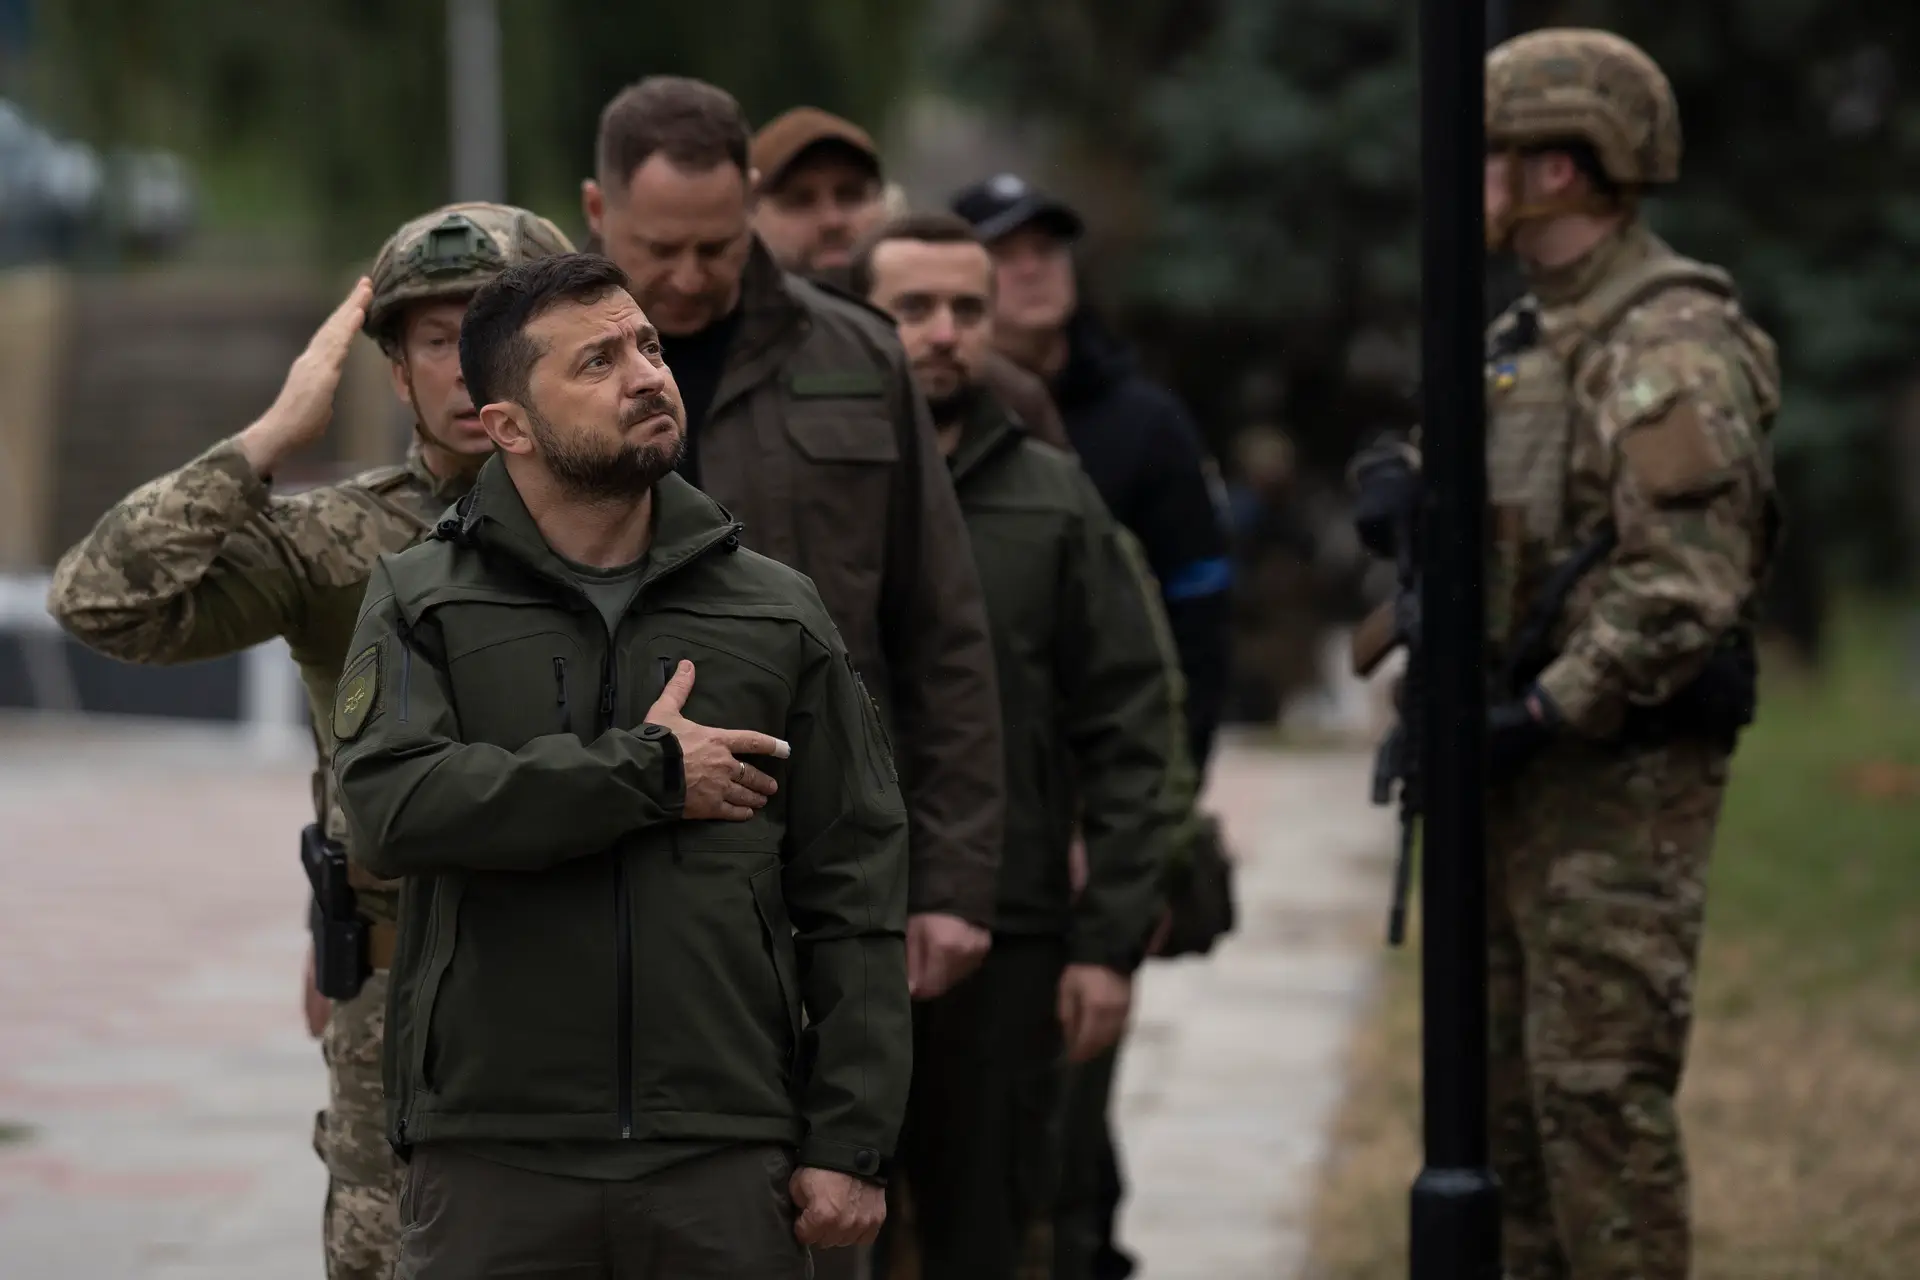 Durante a visita a Izium, Zelensky participou numa cerimónia em que a bandeira ucraniana foi hasteada e saudou os soldados que participaram na operação de libertação.